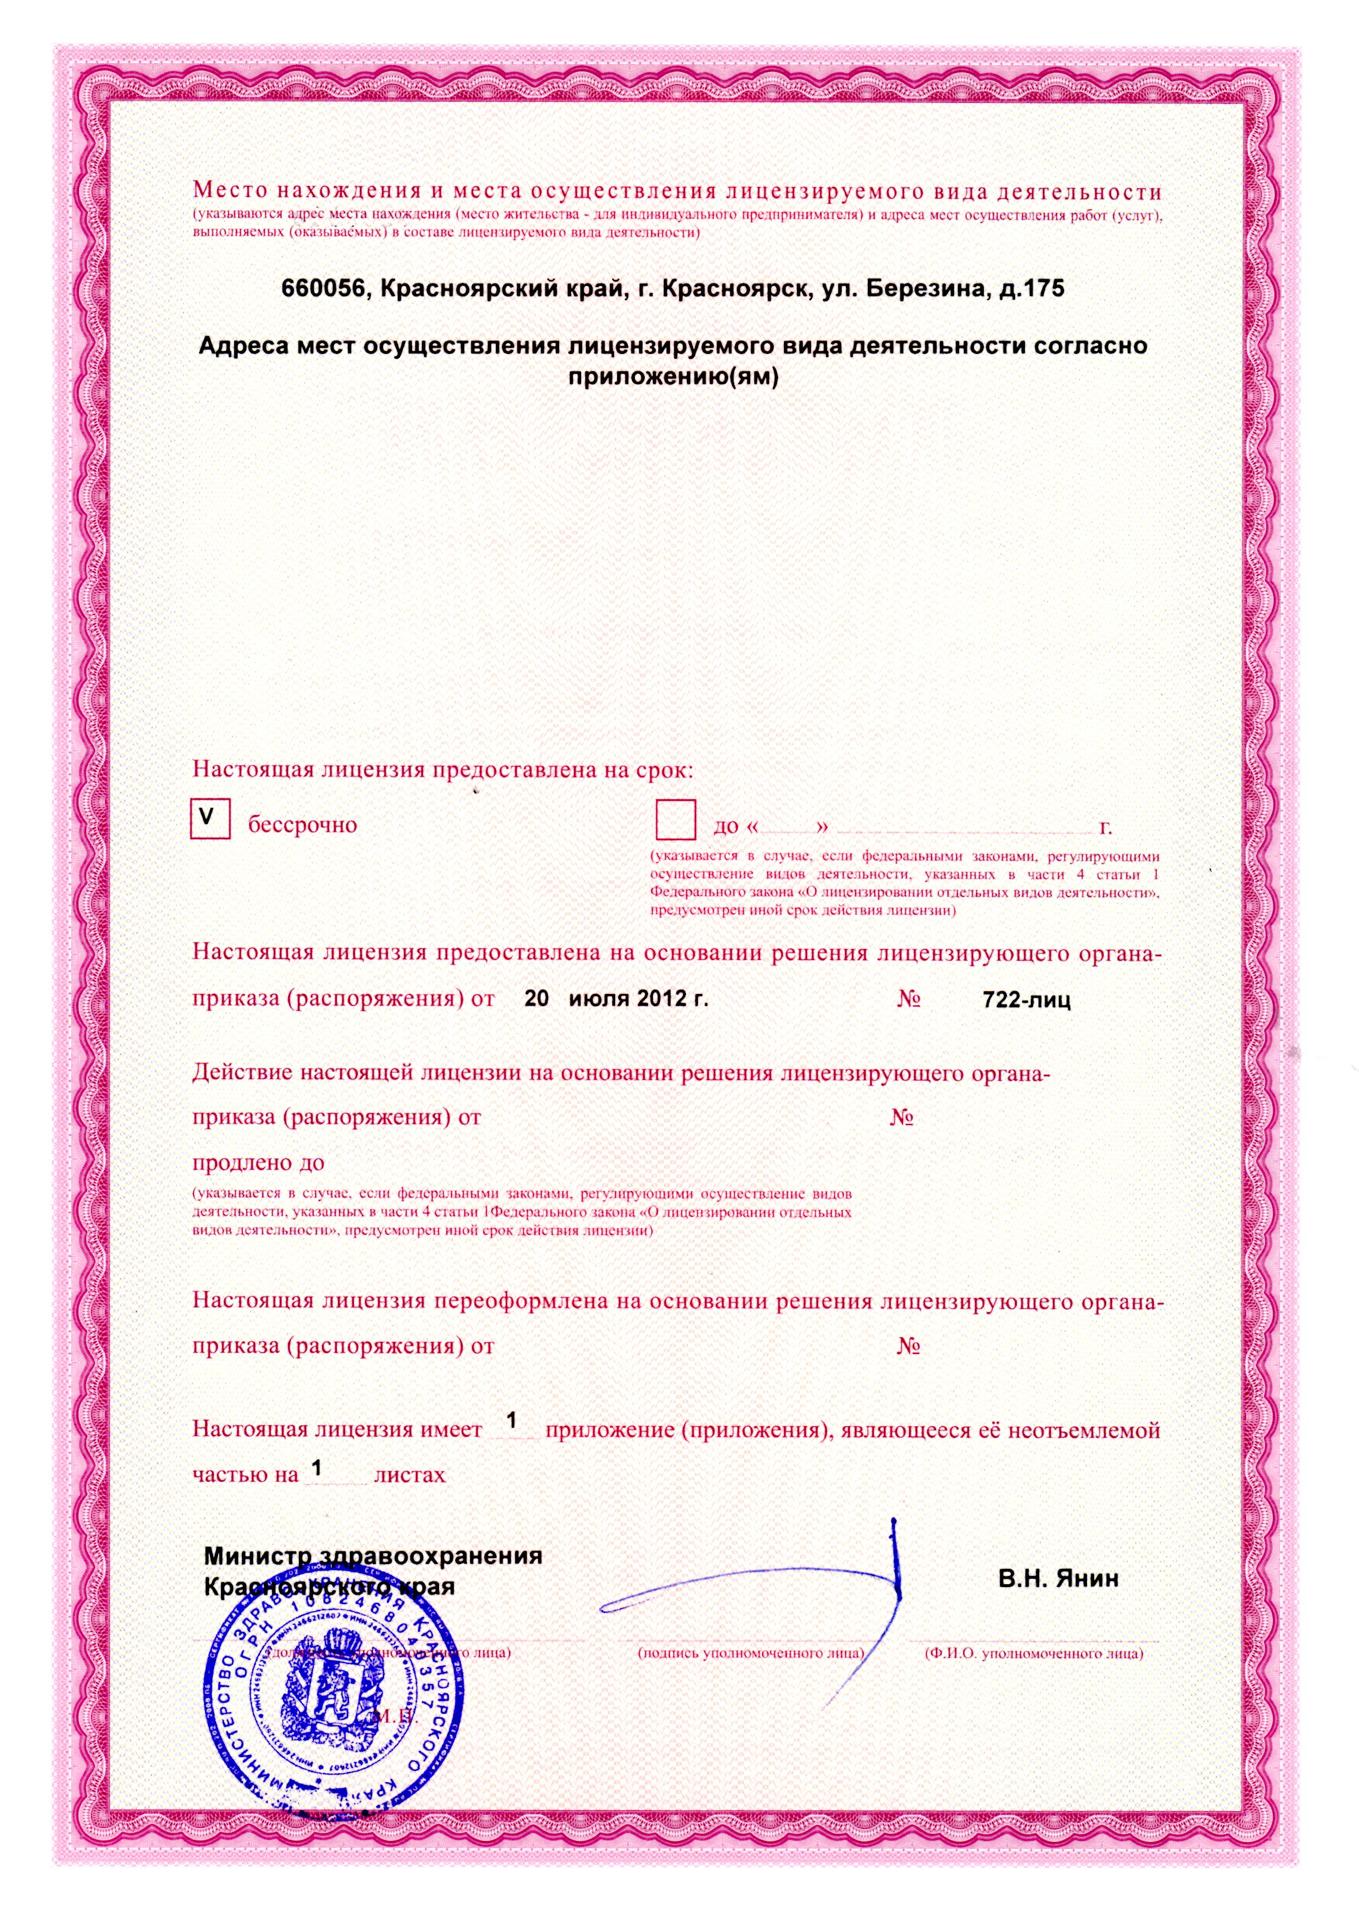 Лицензия медицинской деятельности центра "Крепыш"